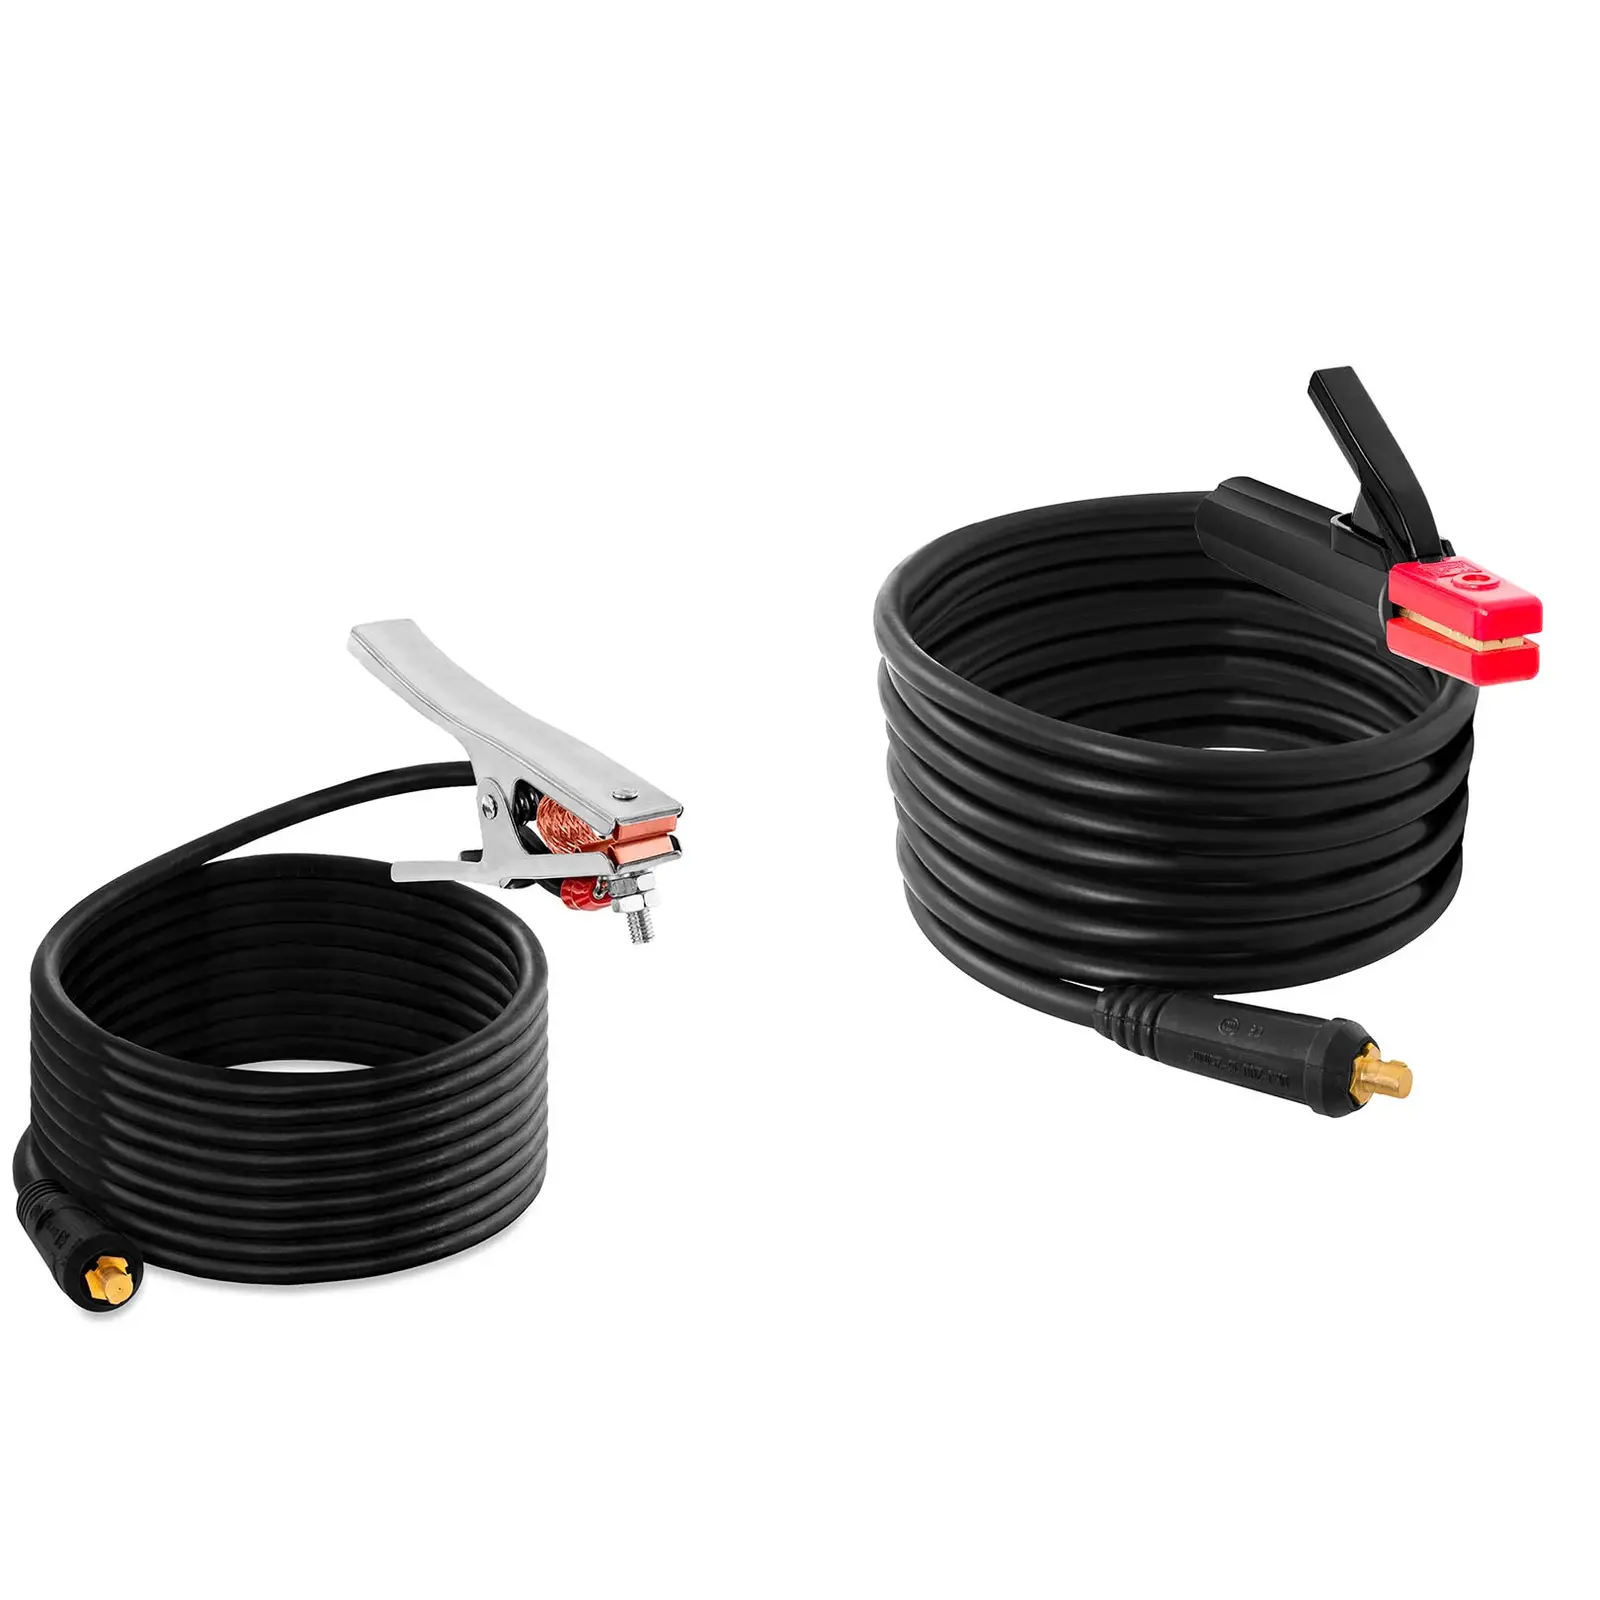 Elektrodsvetsare - IGBT - 200 A - varmstart - 8 m kabel